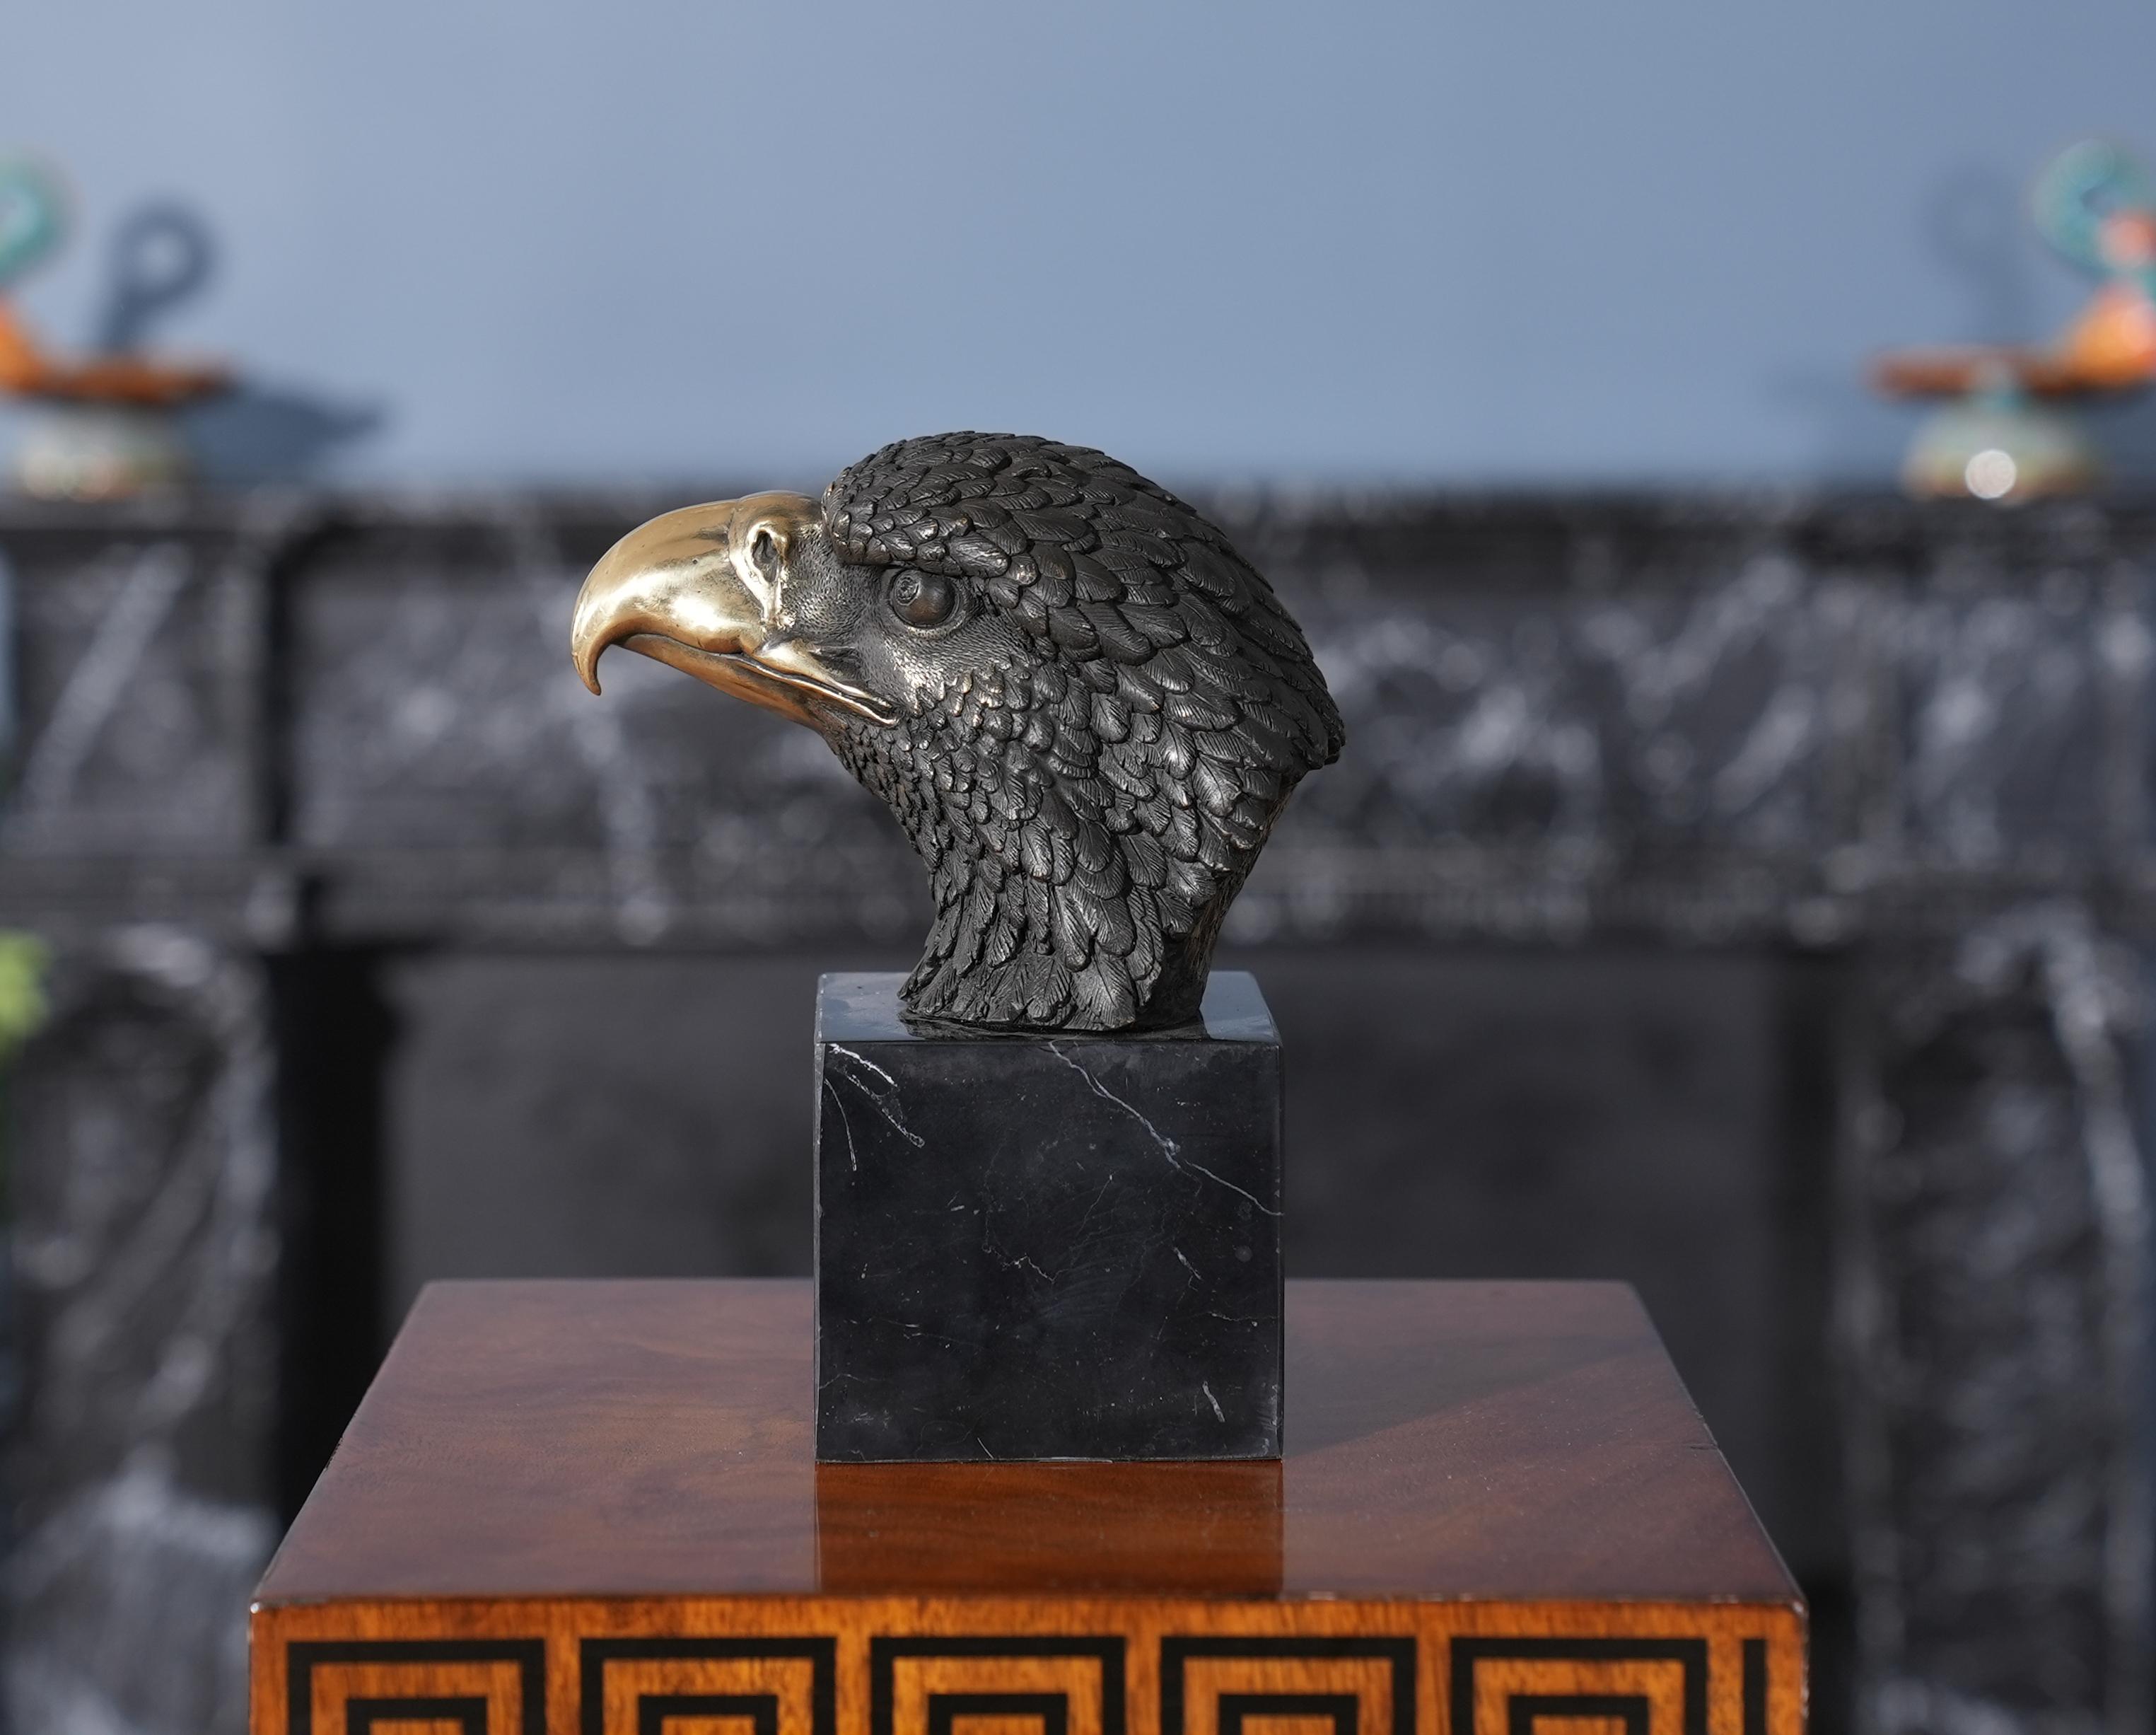 Die kleine Bronzebüste eines Adlers auf einem Marmorsockel ist auch im Stillstand anmutig und passt in jede Umgebung. Die Adlerbüste wird im traditionellen Wachsausschmelzverfahren in Einzelteile zerlegt und dann durch Hartlöten zusammengefügt. Die